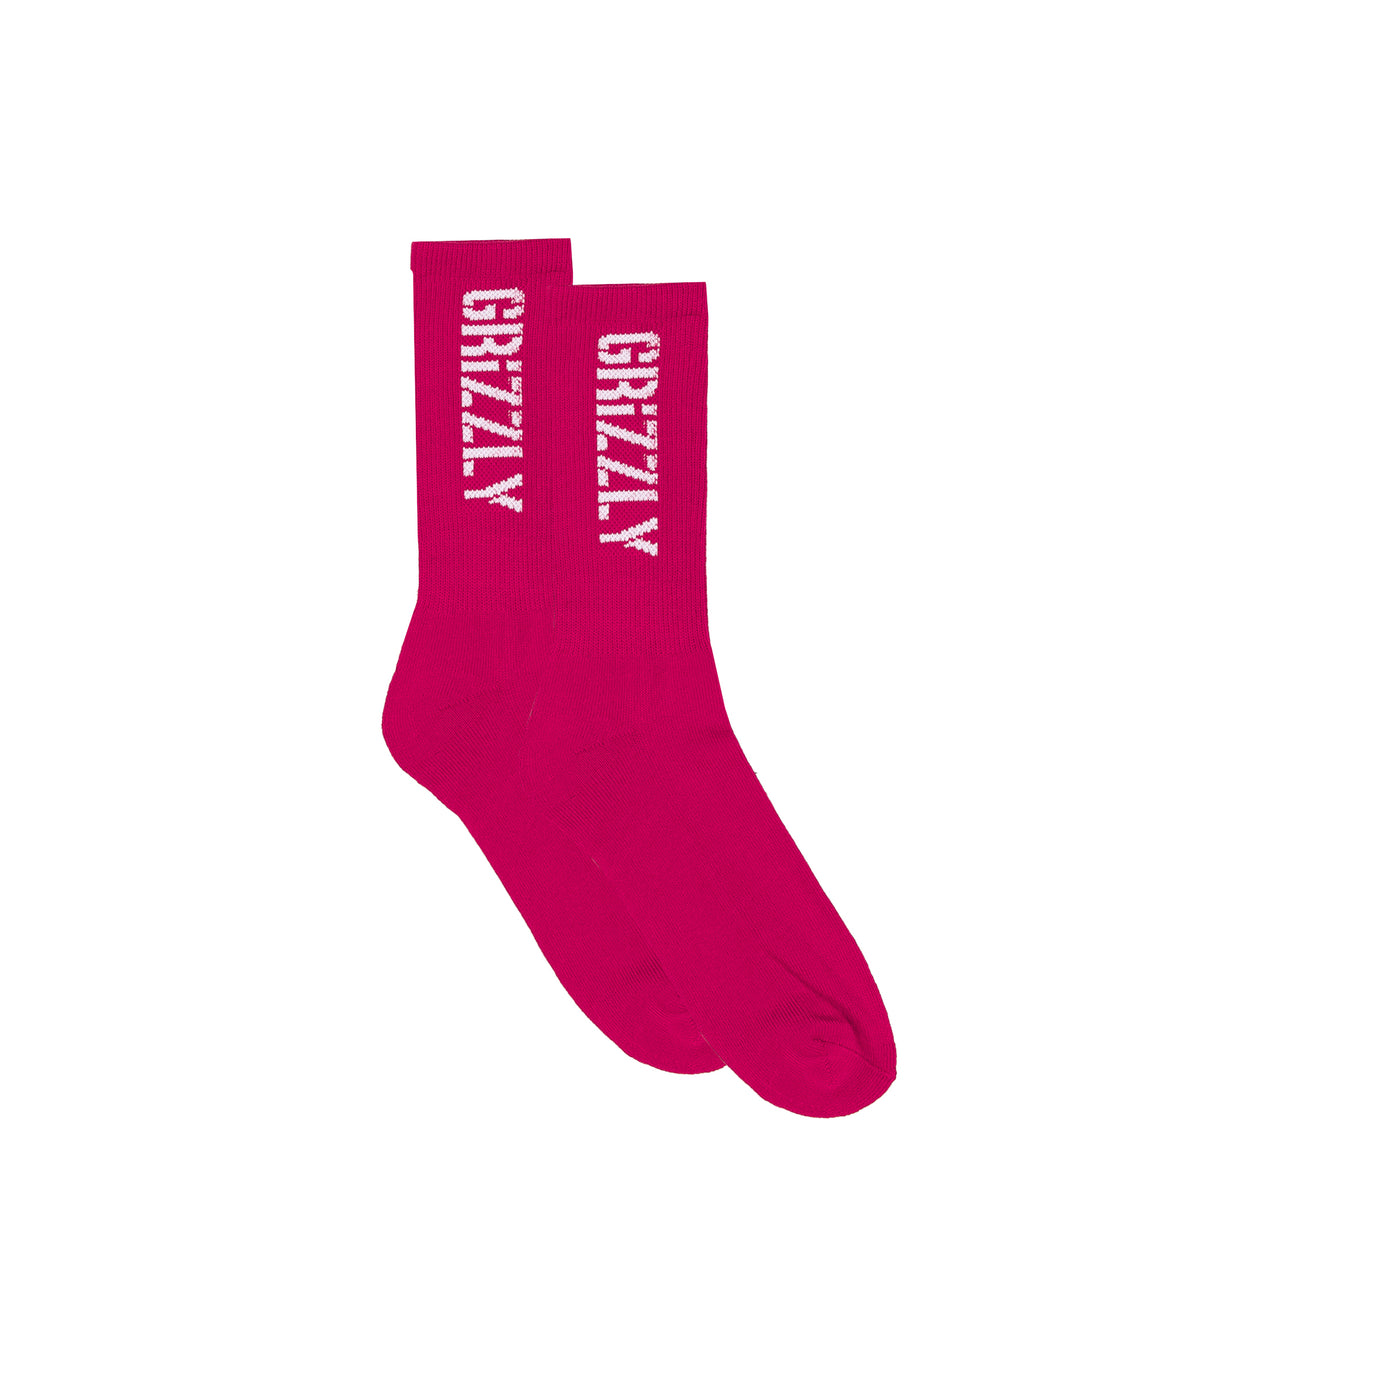 Stamp Socks - Pink/ White